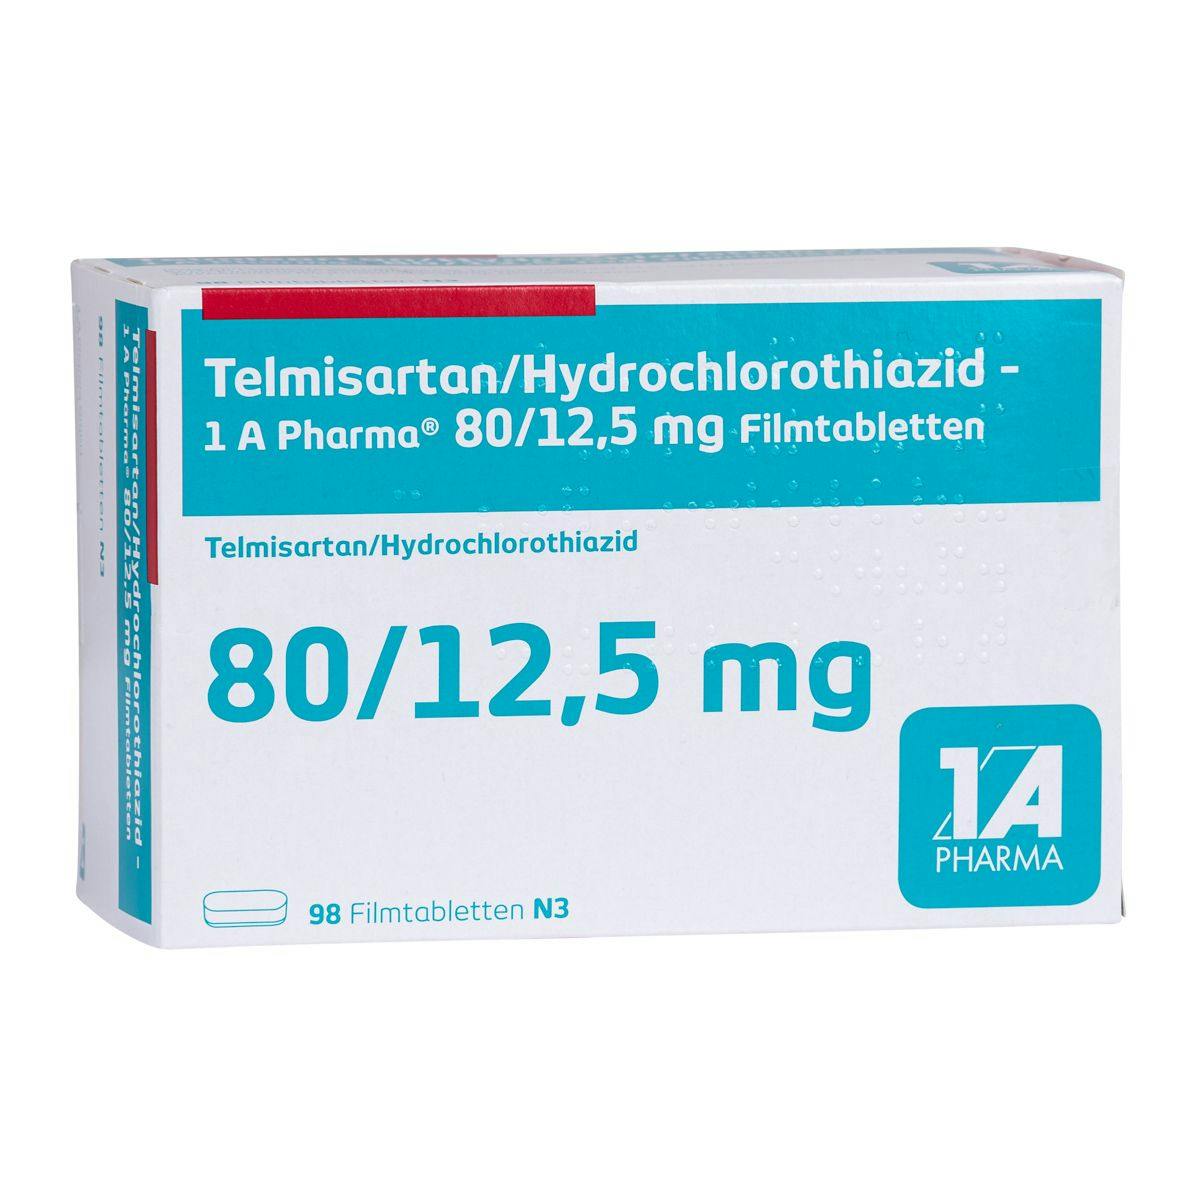 Telmisartan Plus HCT (Telmisartan/Hydrochlorothiazid)